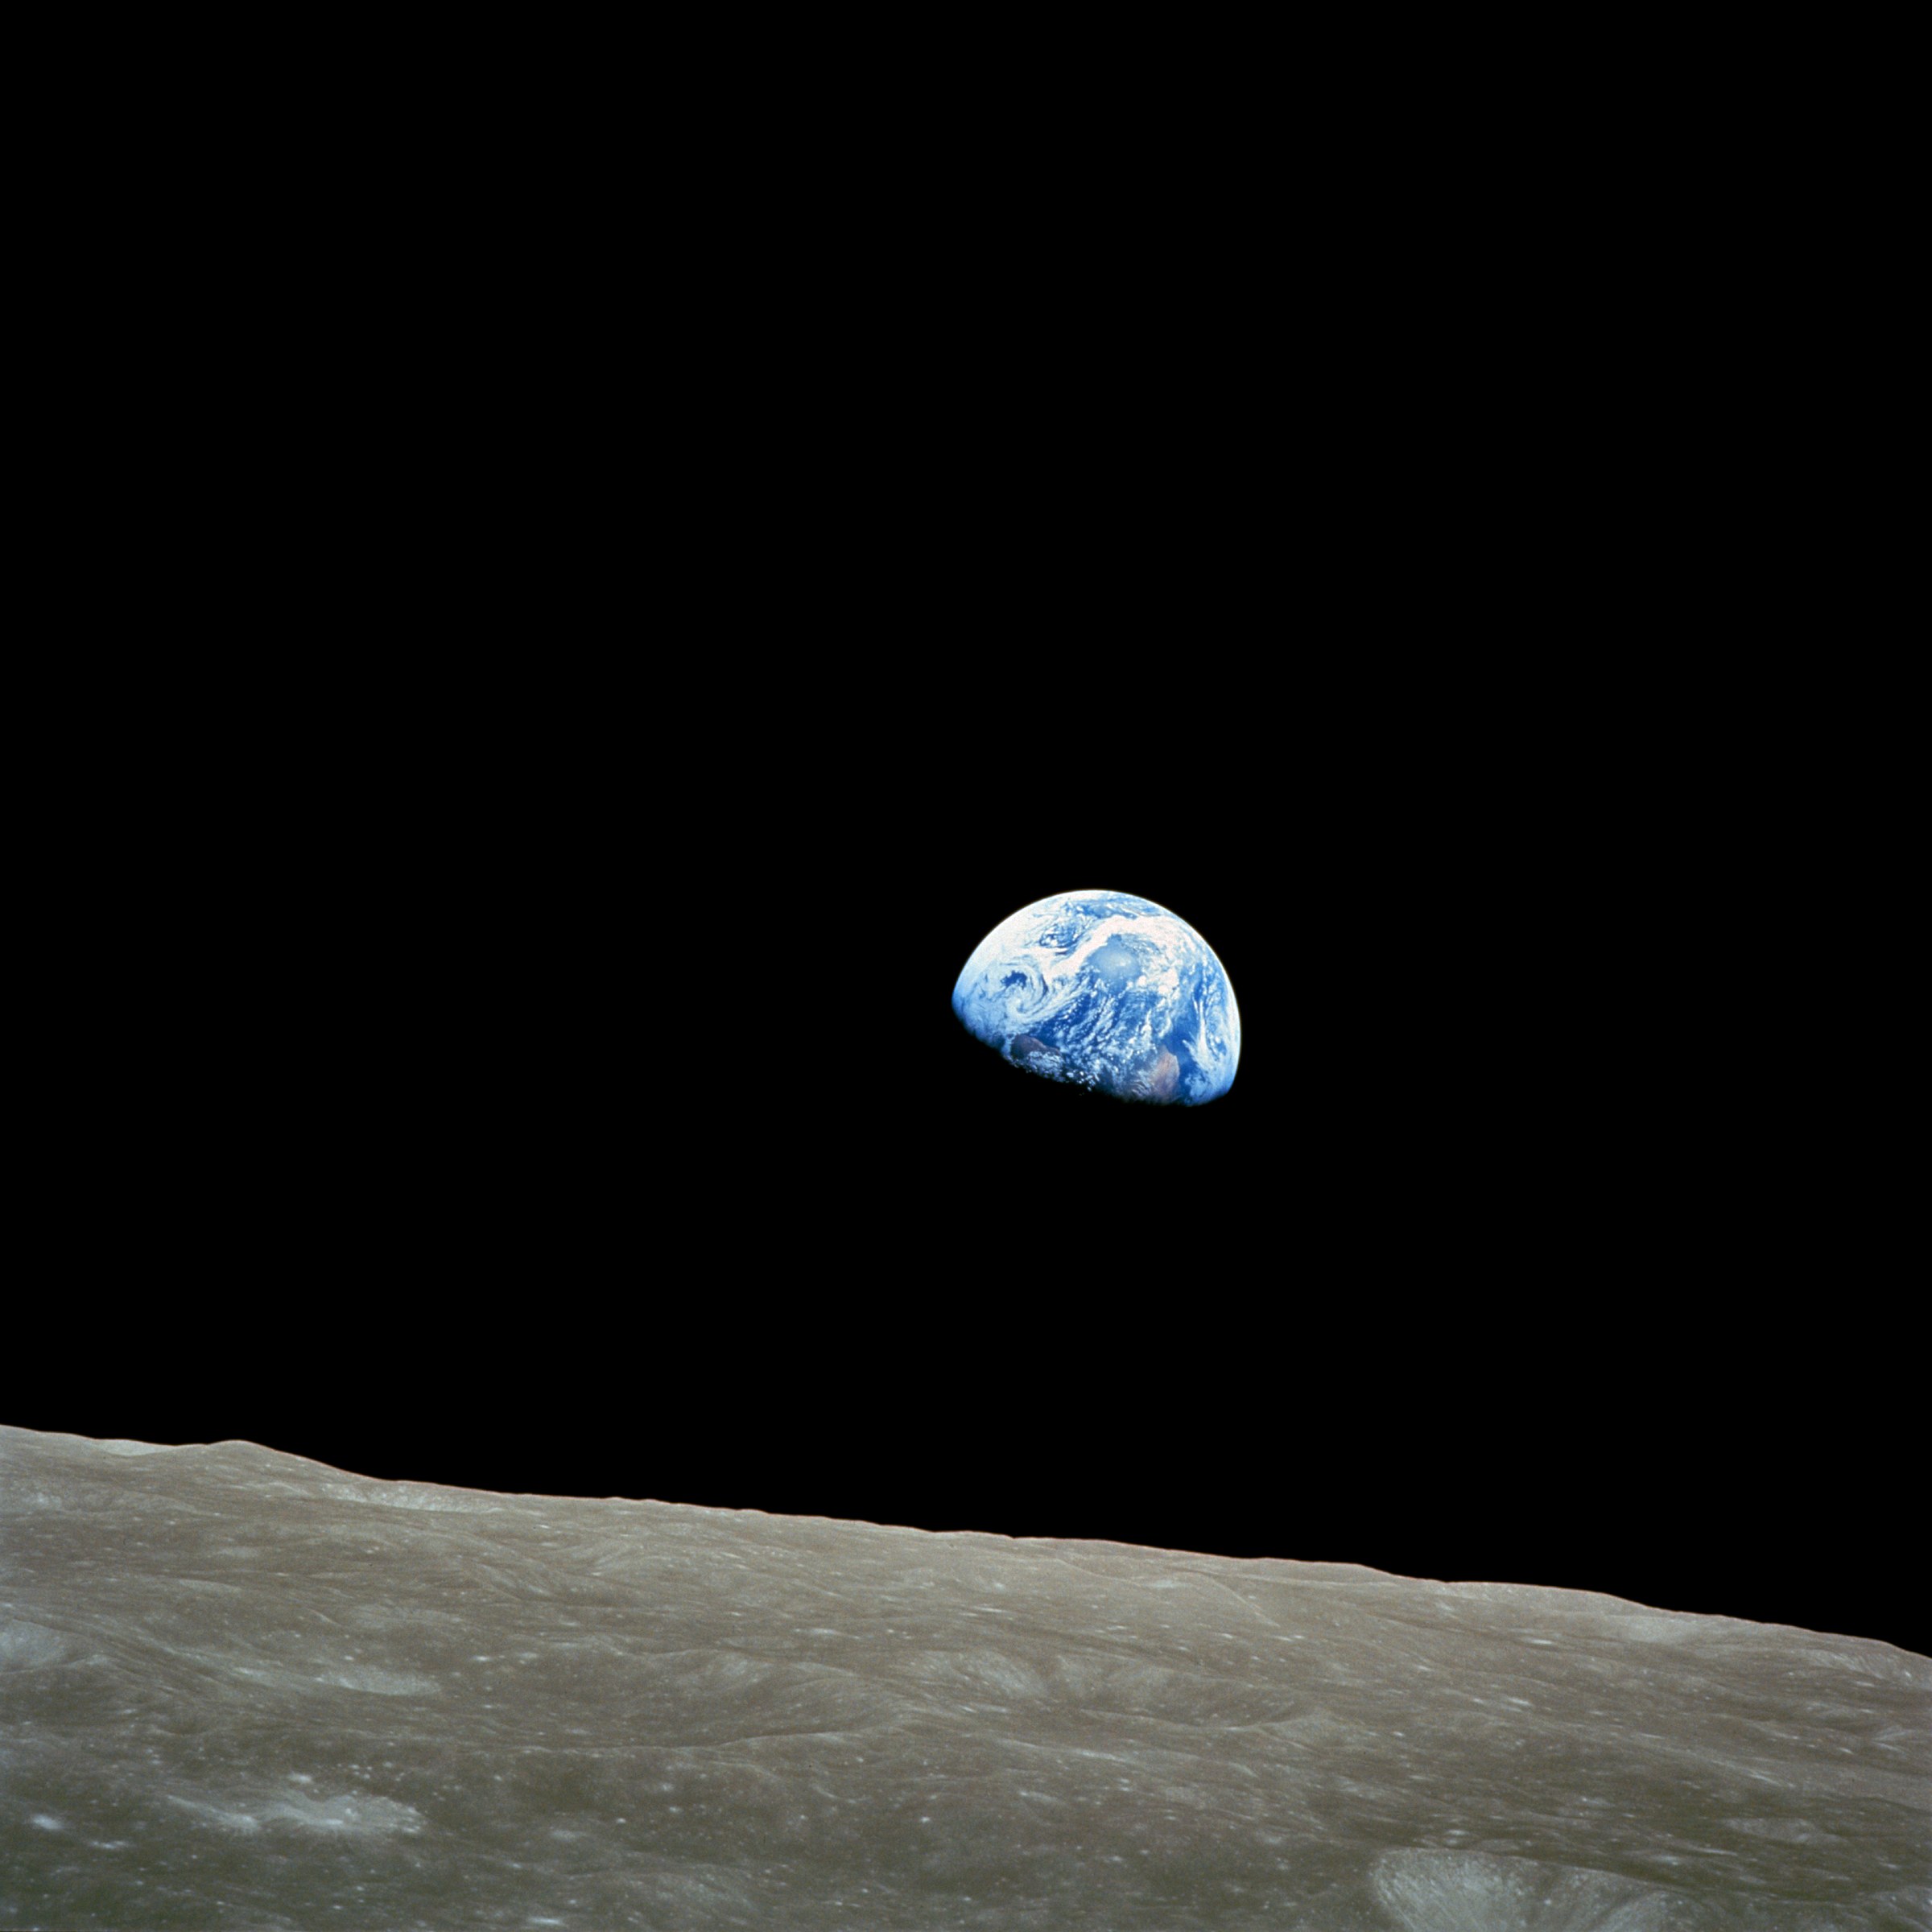 あの有名な地球の写真 地球の出 著作権フリーの画像を使って何か書くブログ